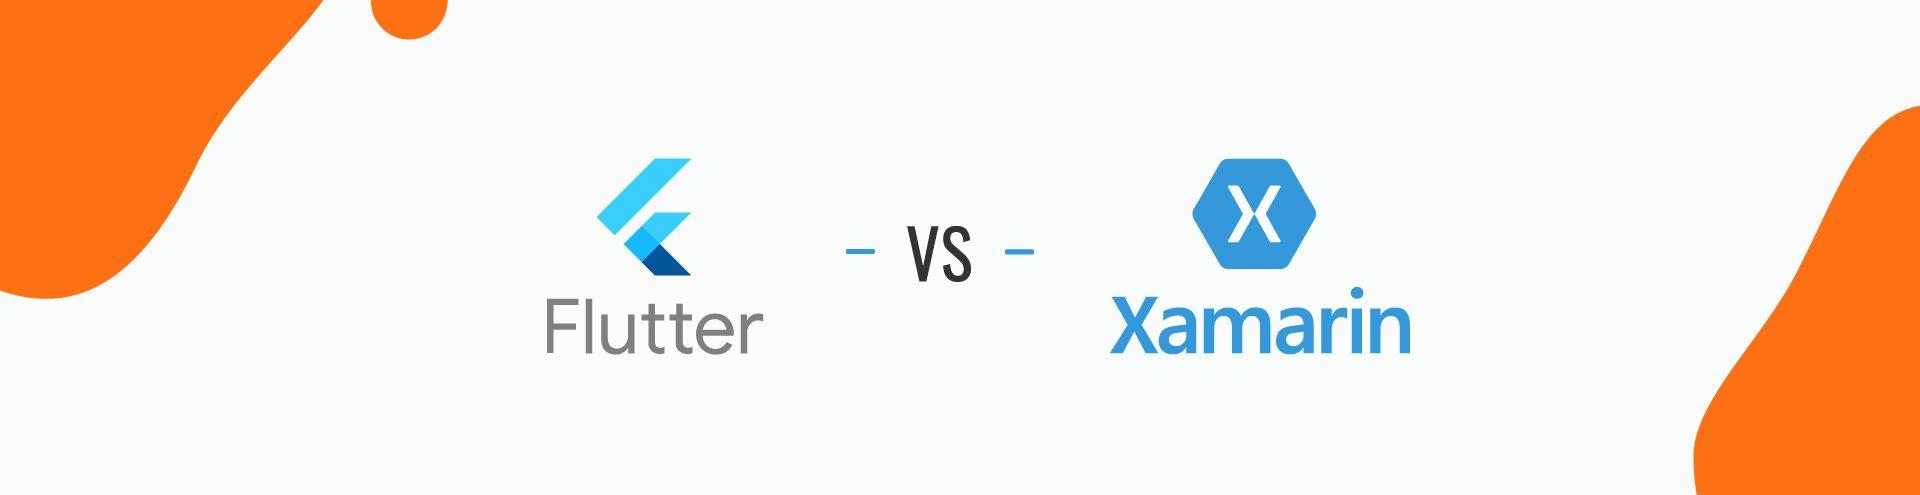 Flutter vs Xamarin: The Complete 
Developer’s Guide